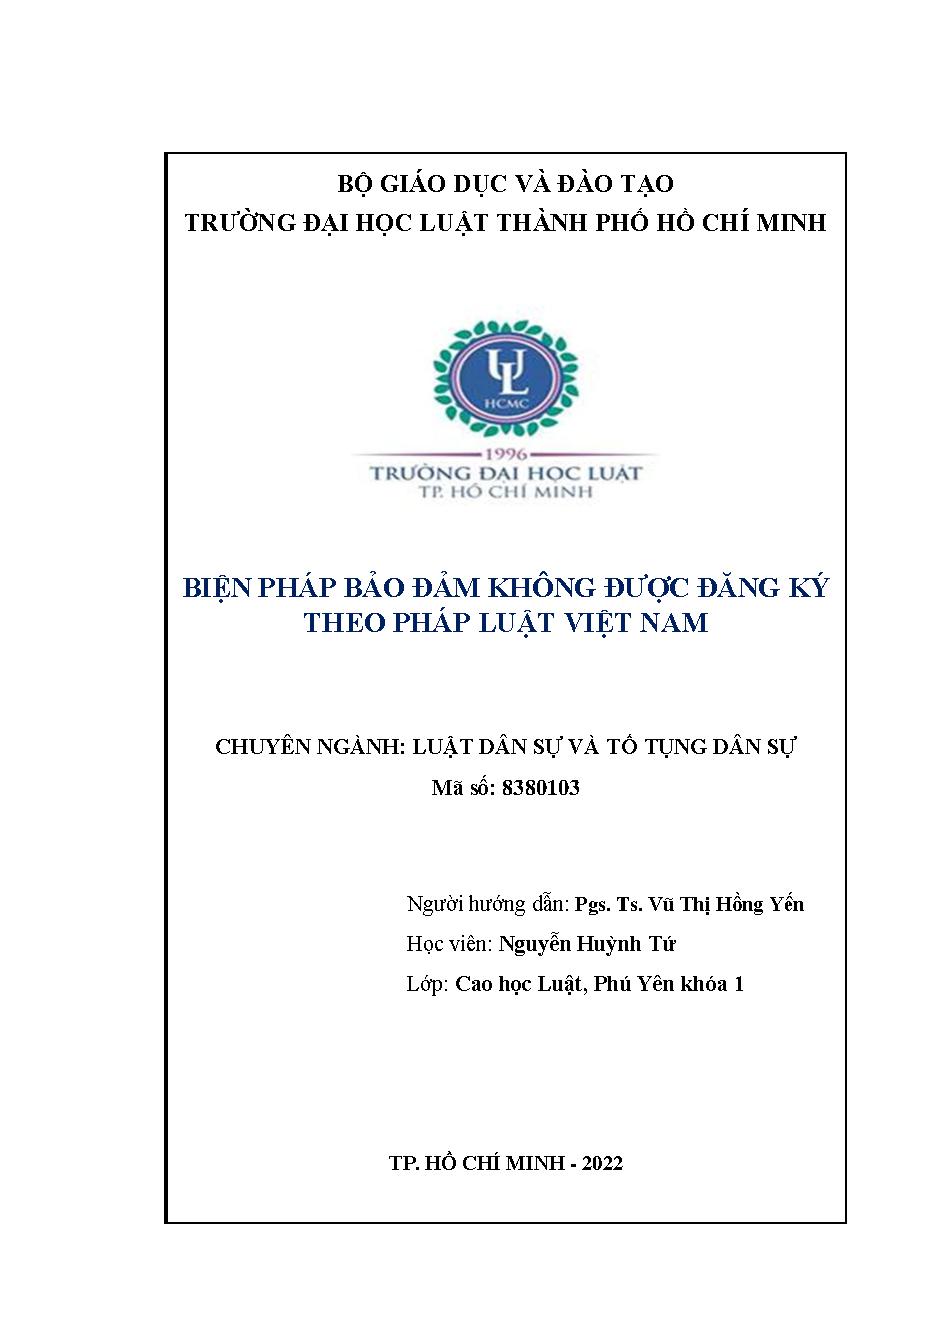 Biện pháp bảo đảm không được đăng ký theo pháp luật Việt Nam